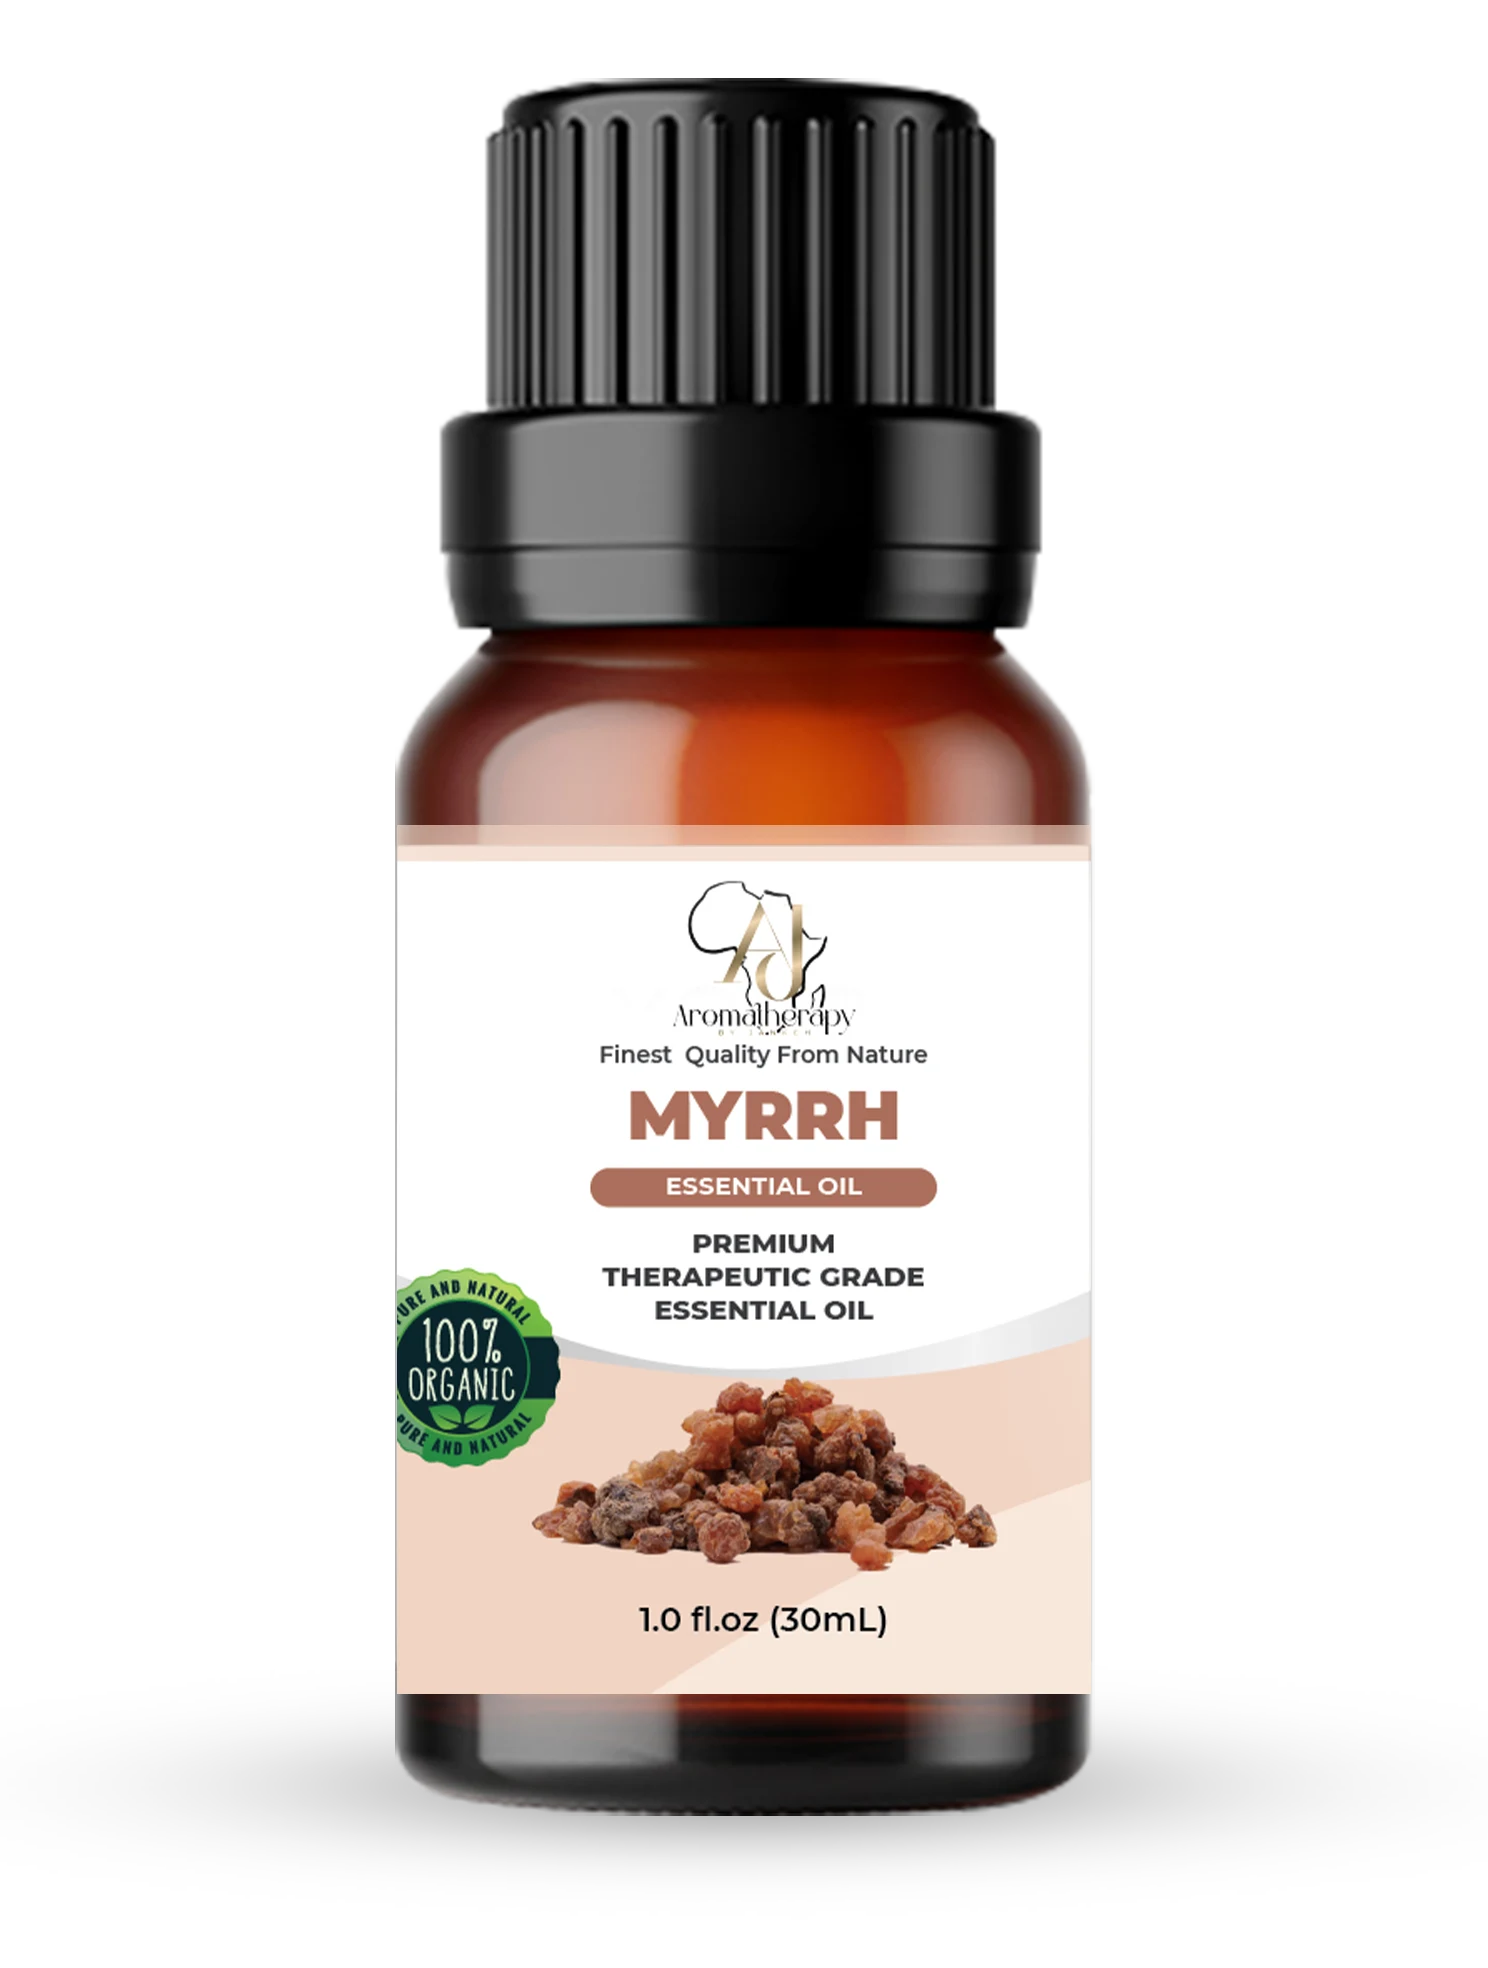 Myrrh Oil Uses, Myrrh Essential Oil